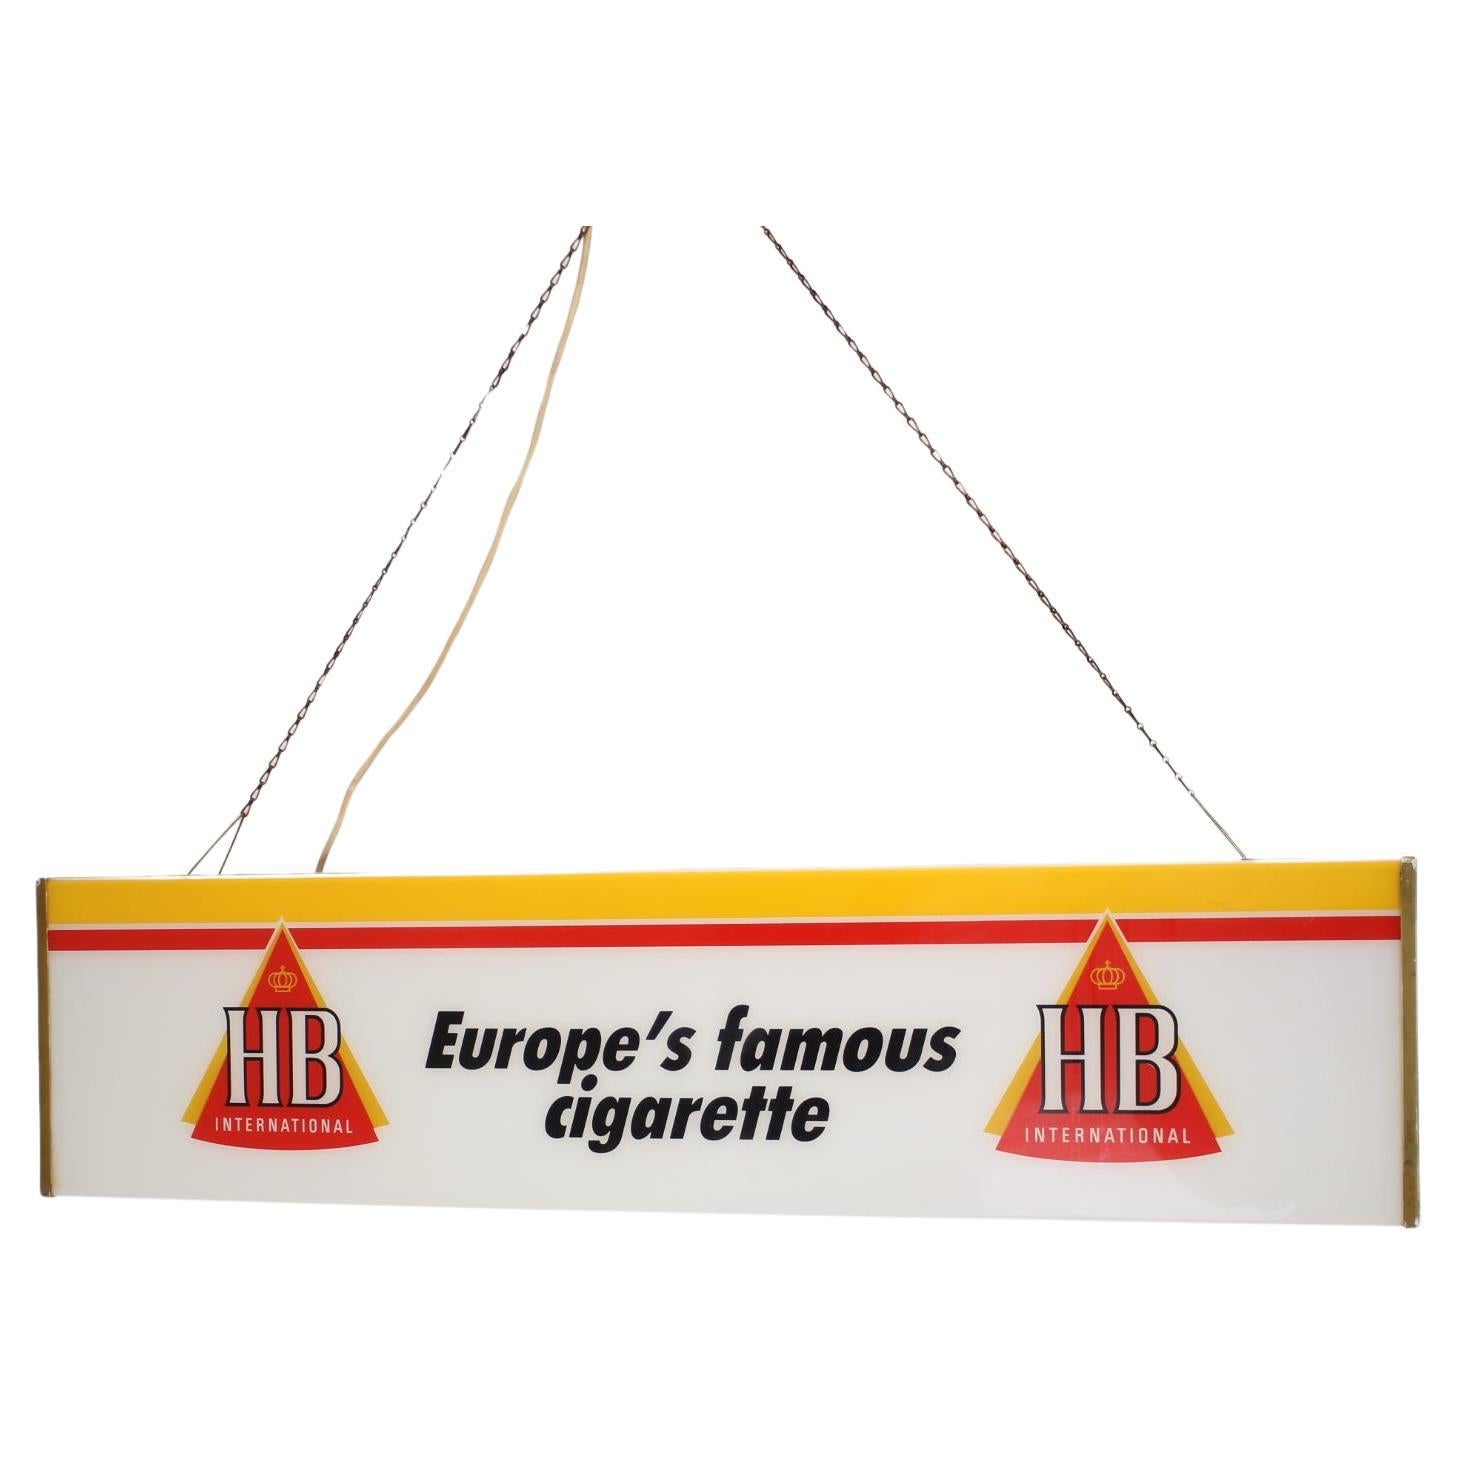 Grand publicitaire éclairé pour les cigarettes HB, 1970